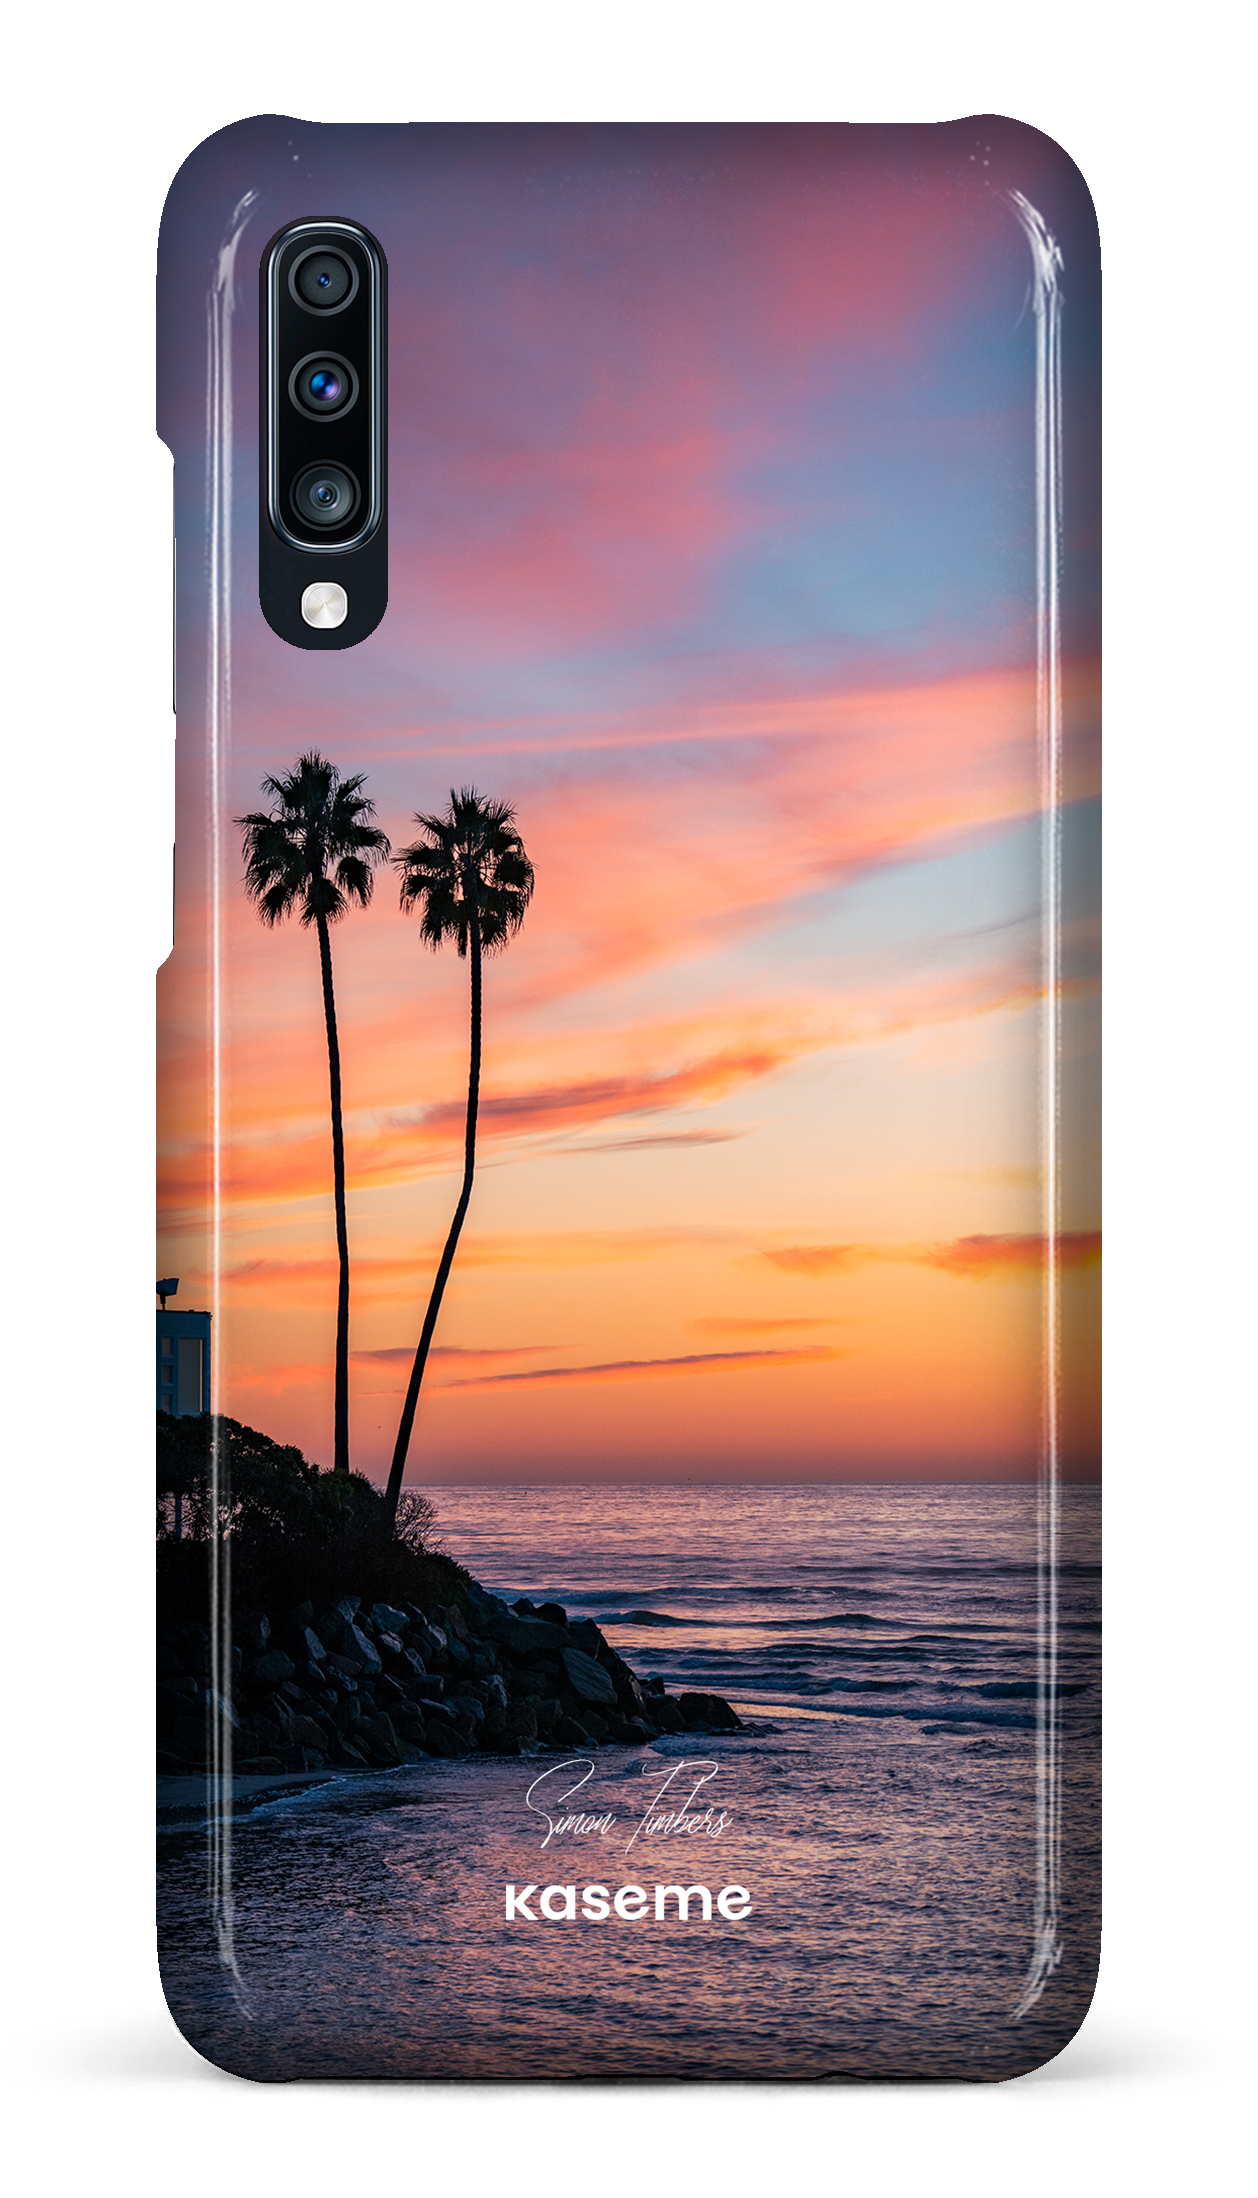 Sunset Palms by Simon Timbers - Galaxy A70